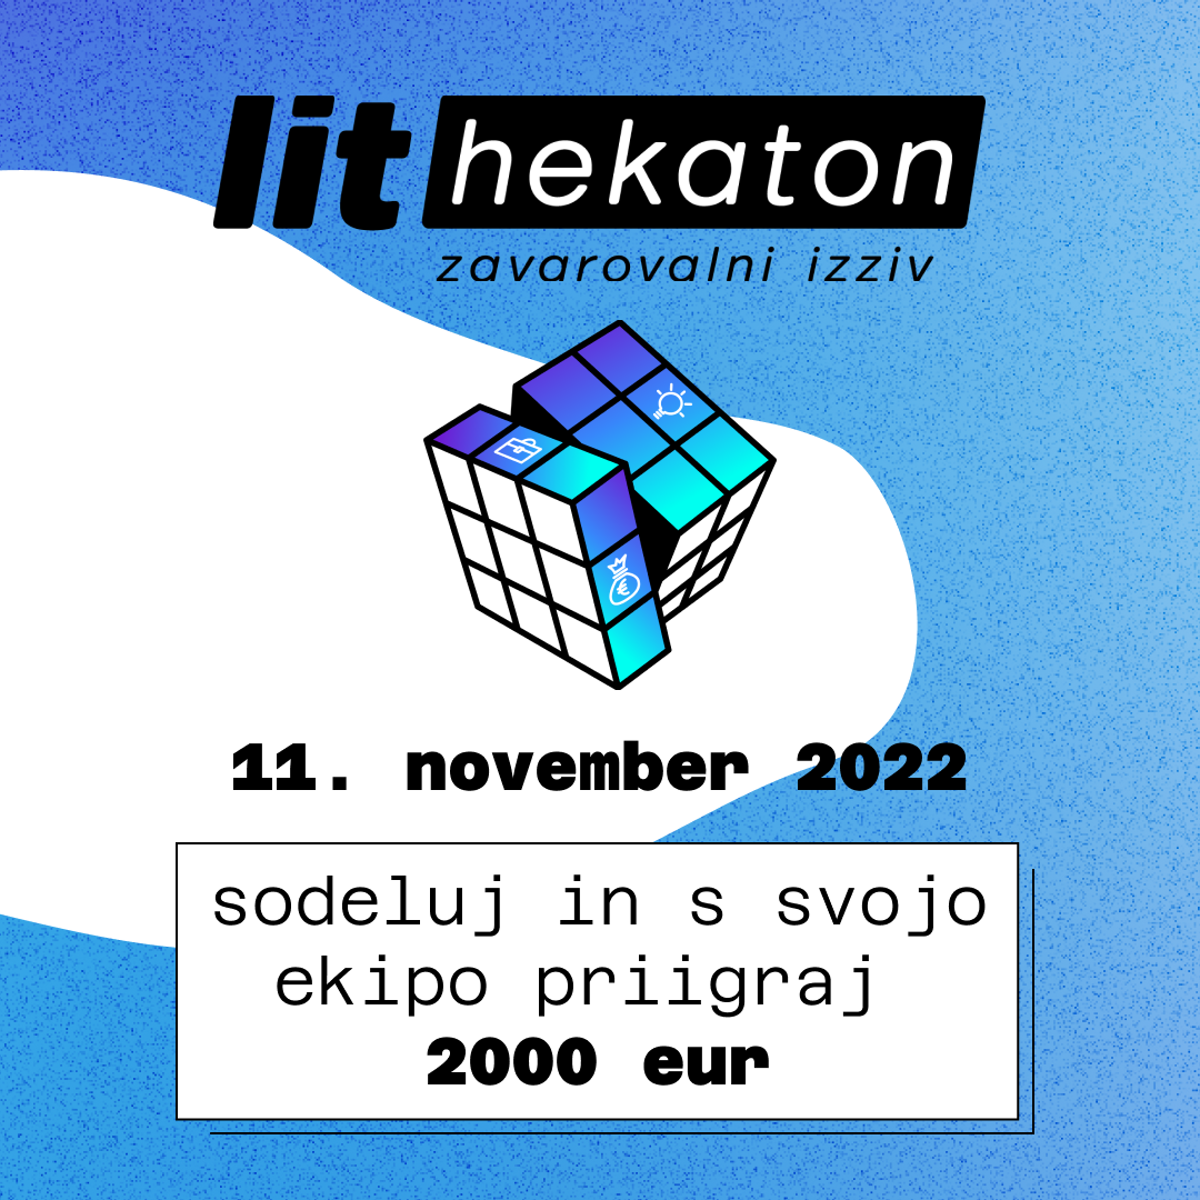 lit-hekaton-2022post